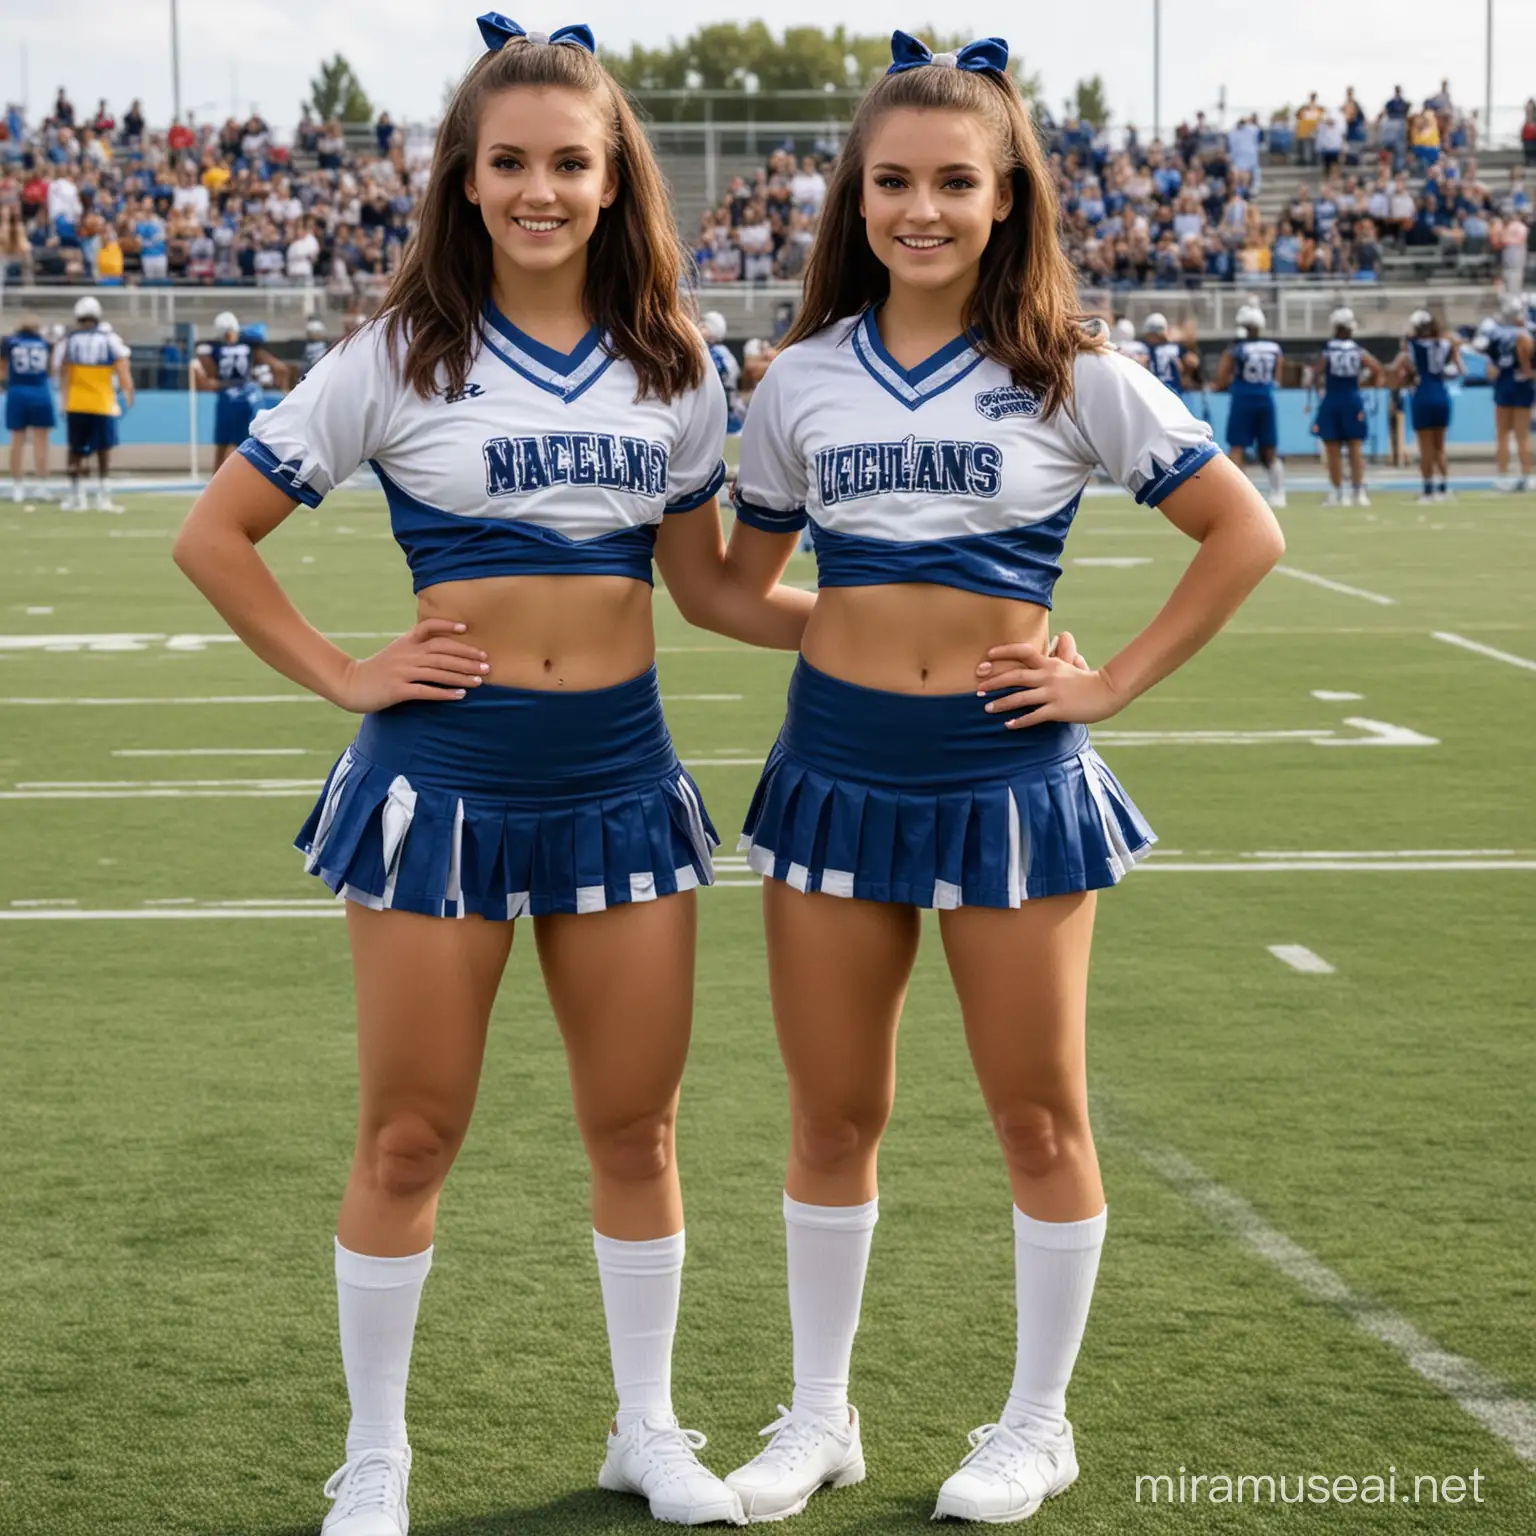 Cheerleaders Standing on Football Field